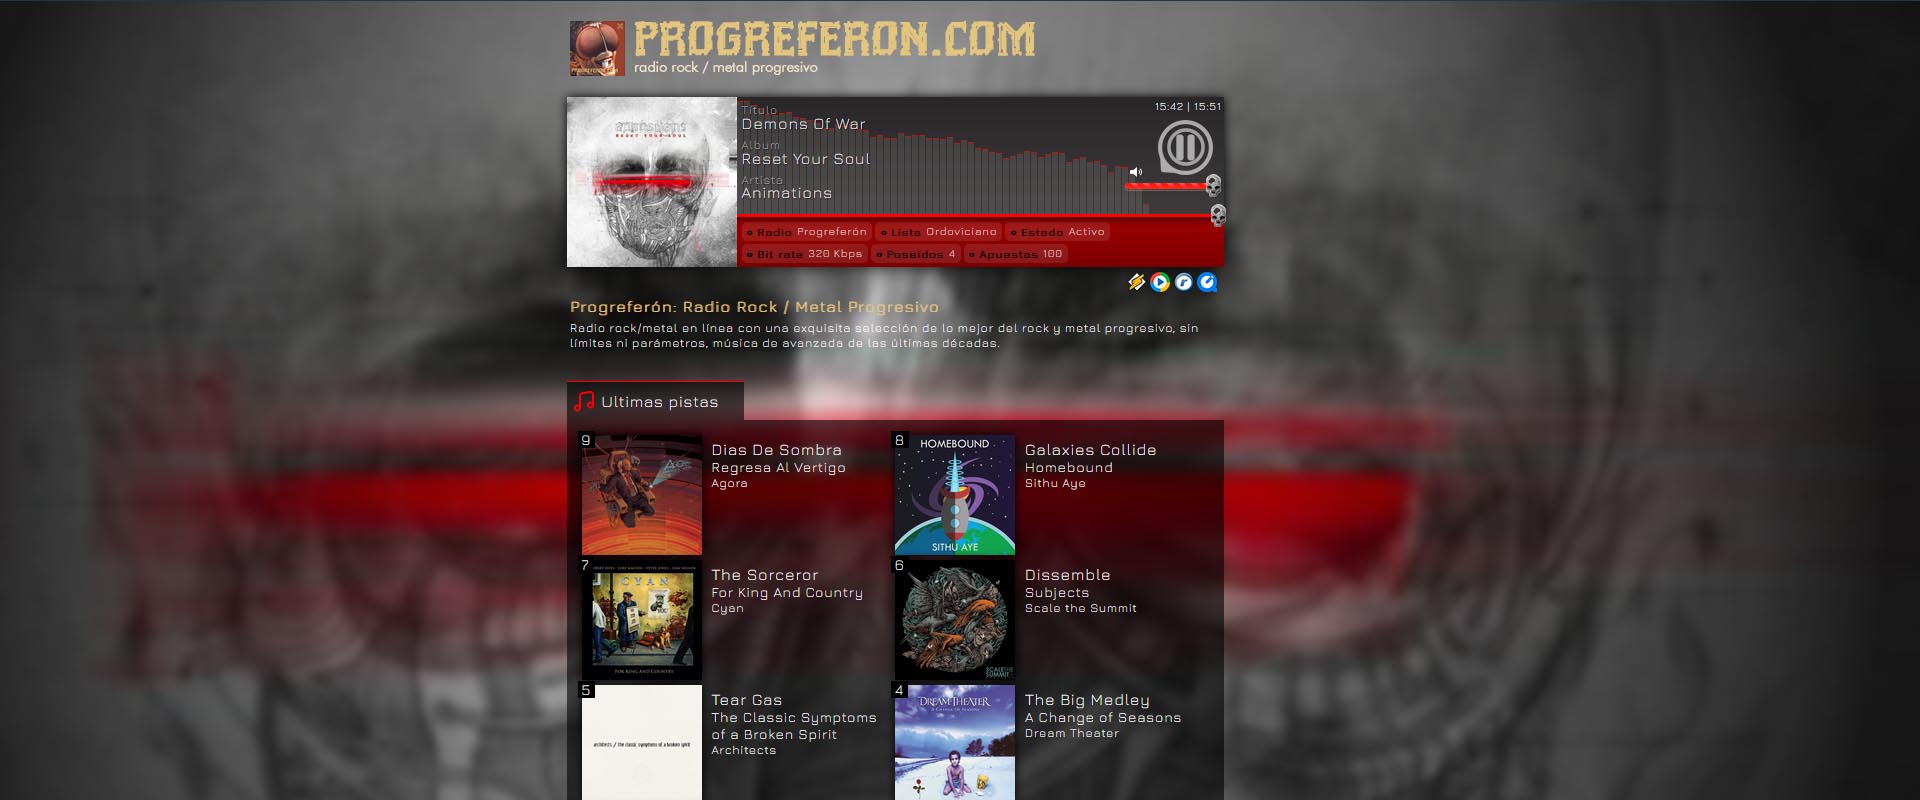 Progreferon.com